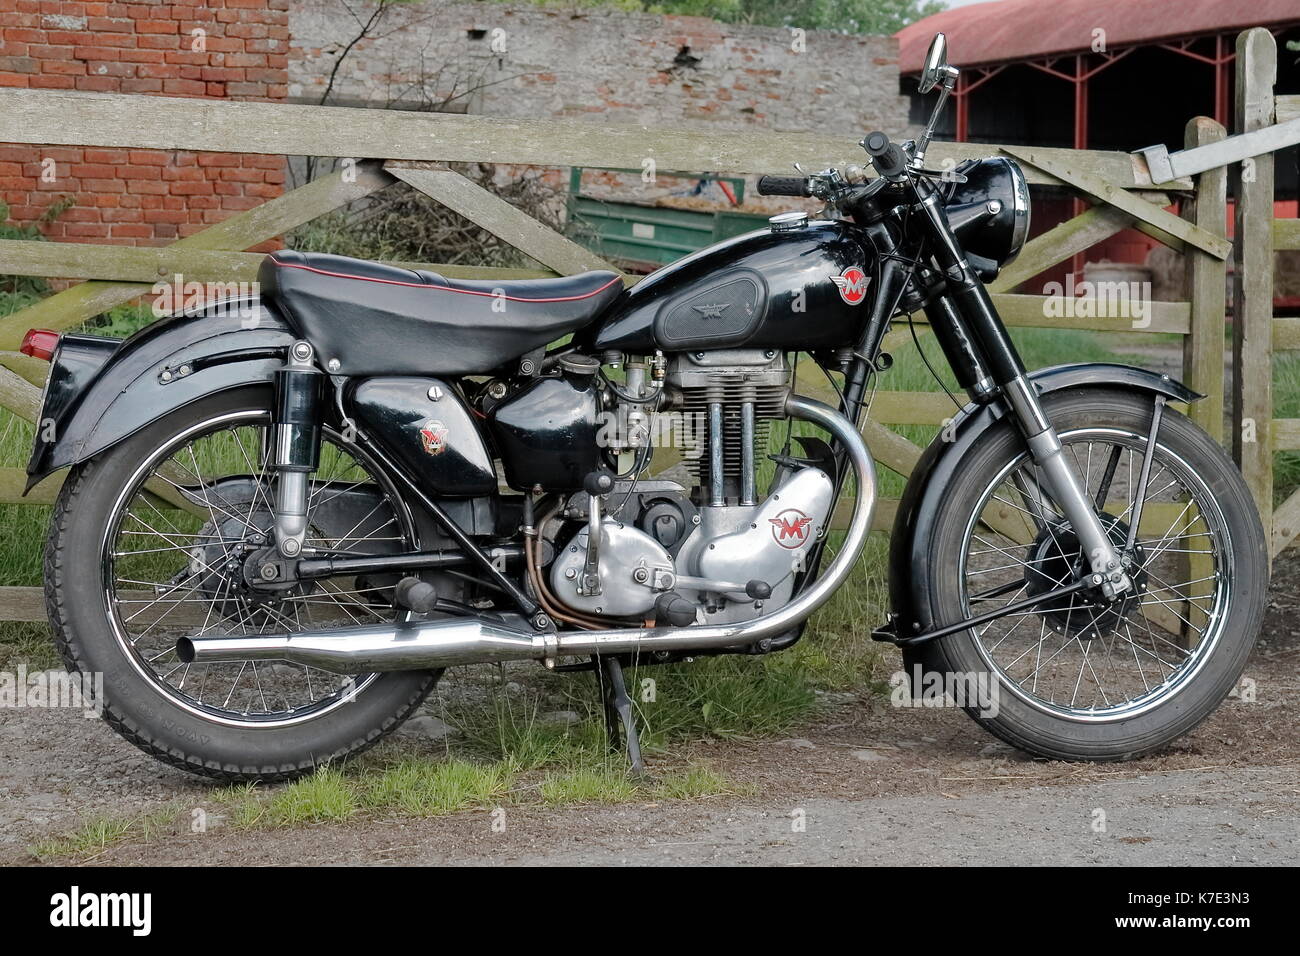 Restaurierten historischen Matchless G3 LS 350 ccm Motorrad Oldtimer oder  Motorrad in der Nähe von einem Bauernhof im Norden von Wales mit einer  Scheune im Hintergrund geparkt Stockfotografie - Alamy